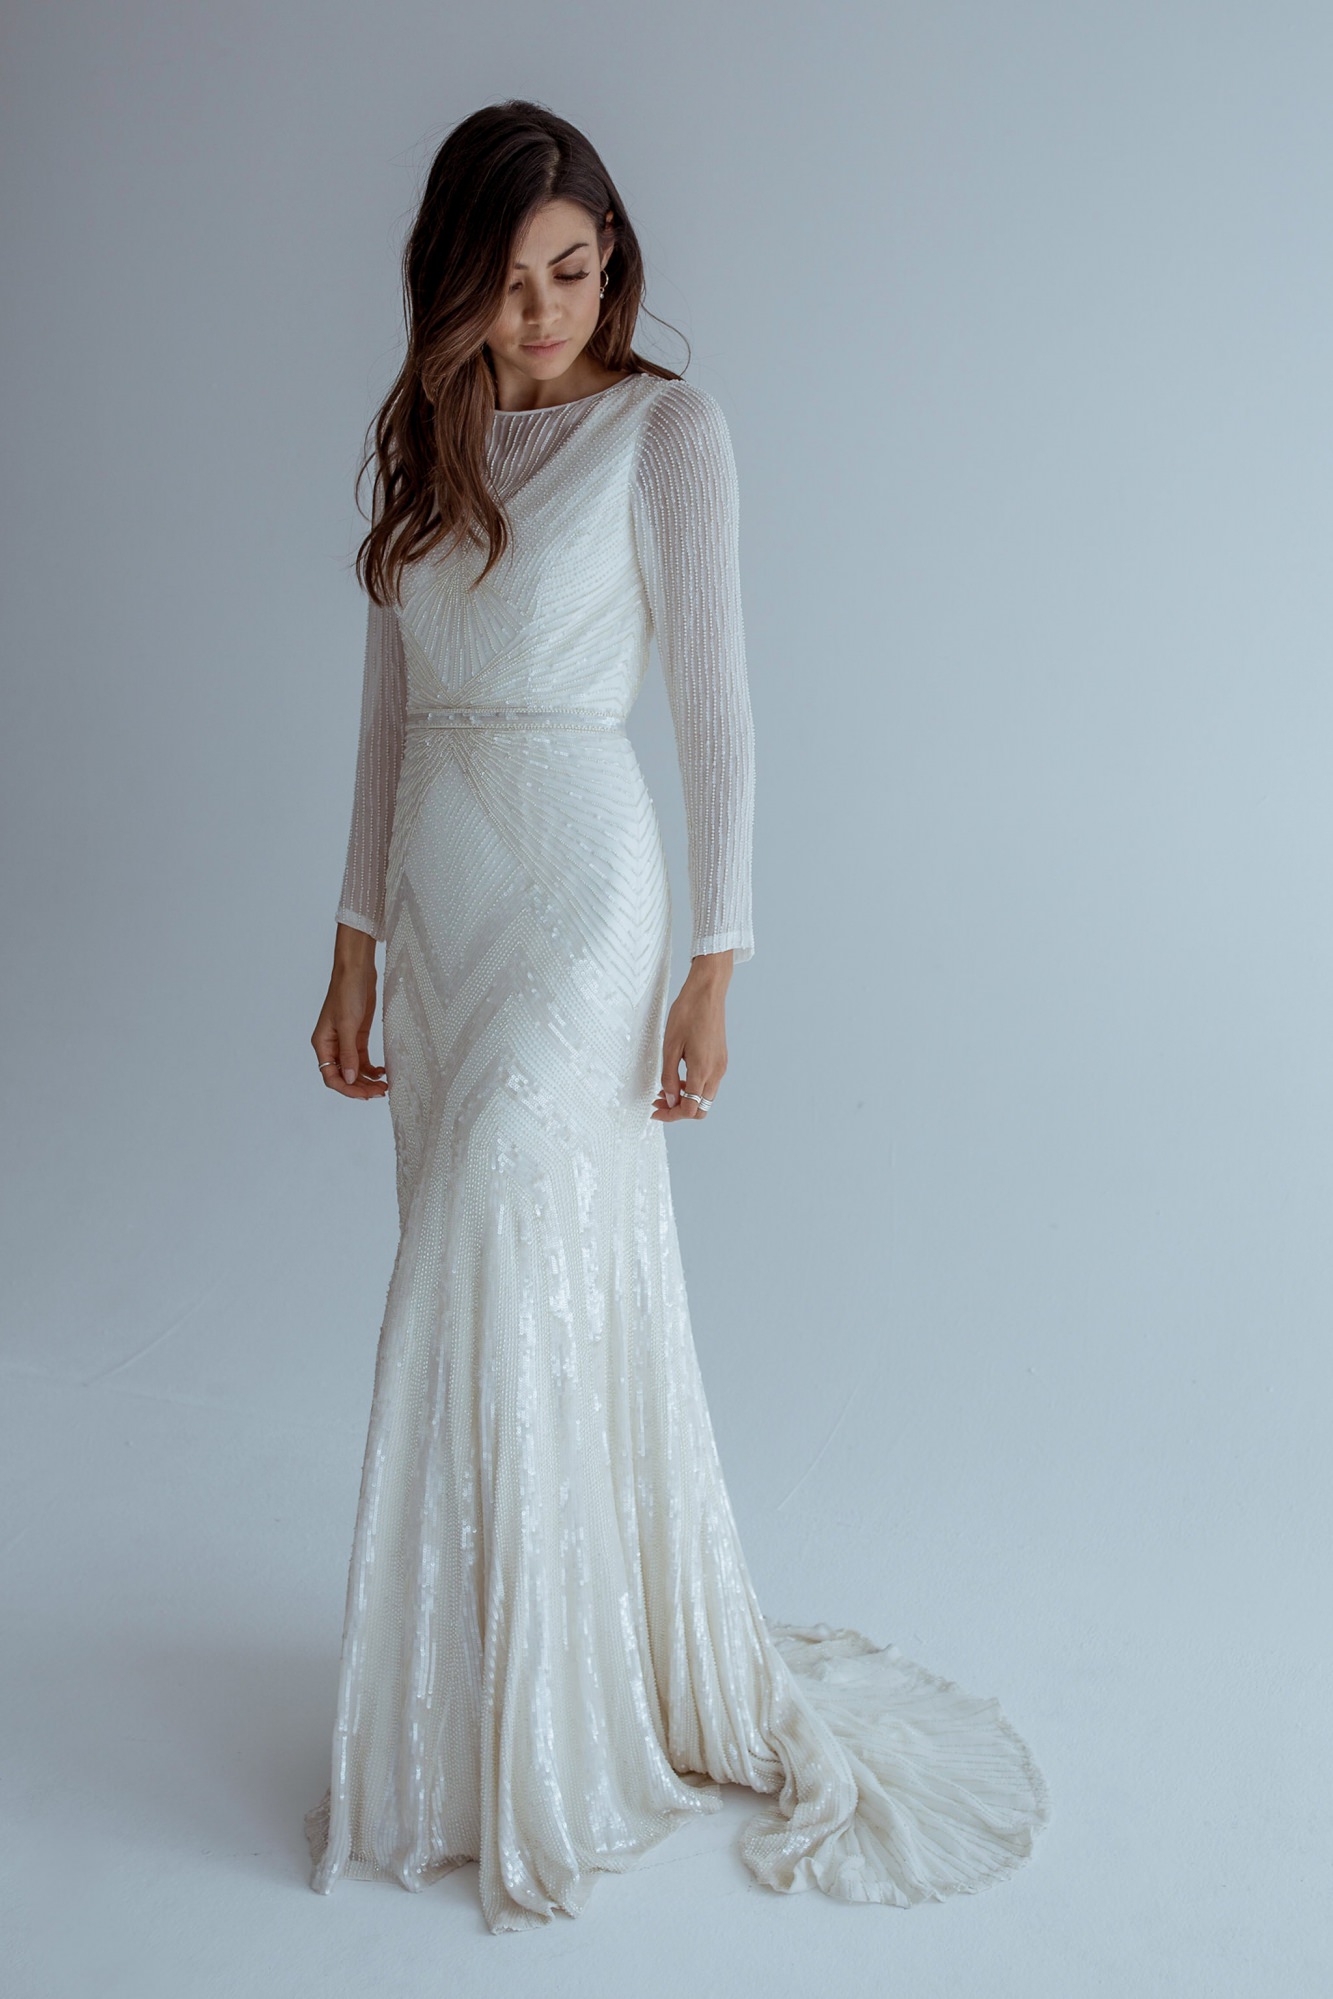 Cassie Wedding Dress by Karen Willis Holmes - Paperswan Bride